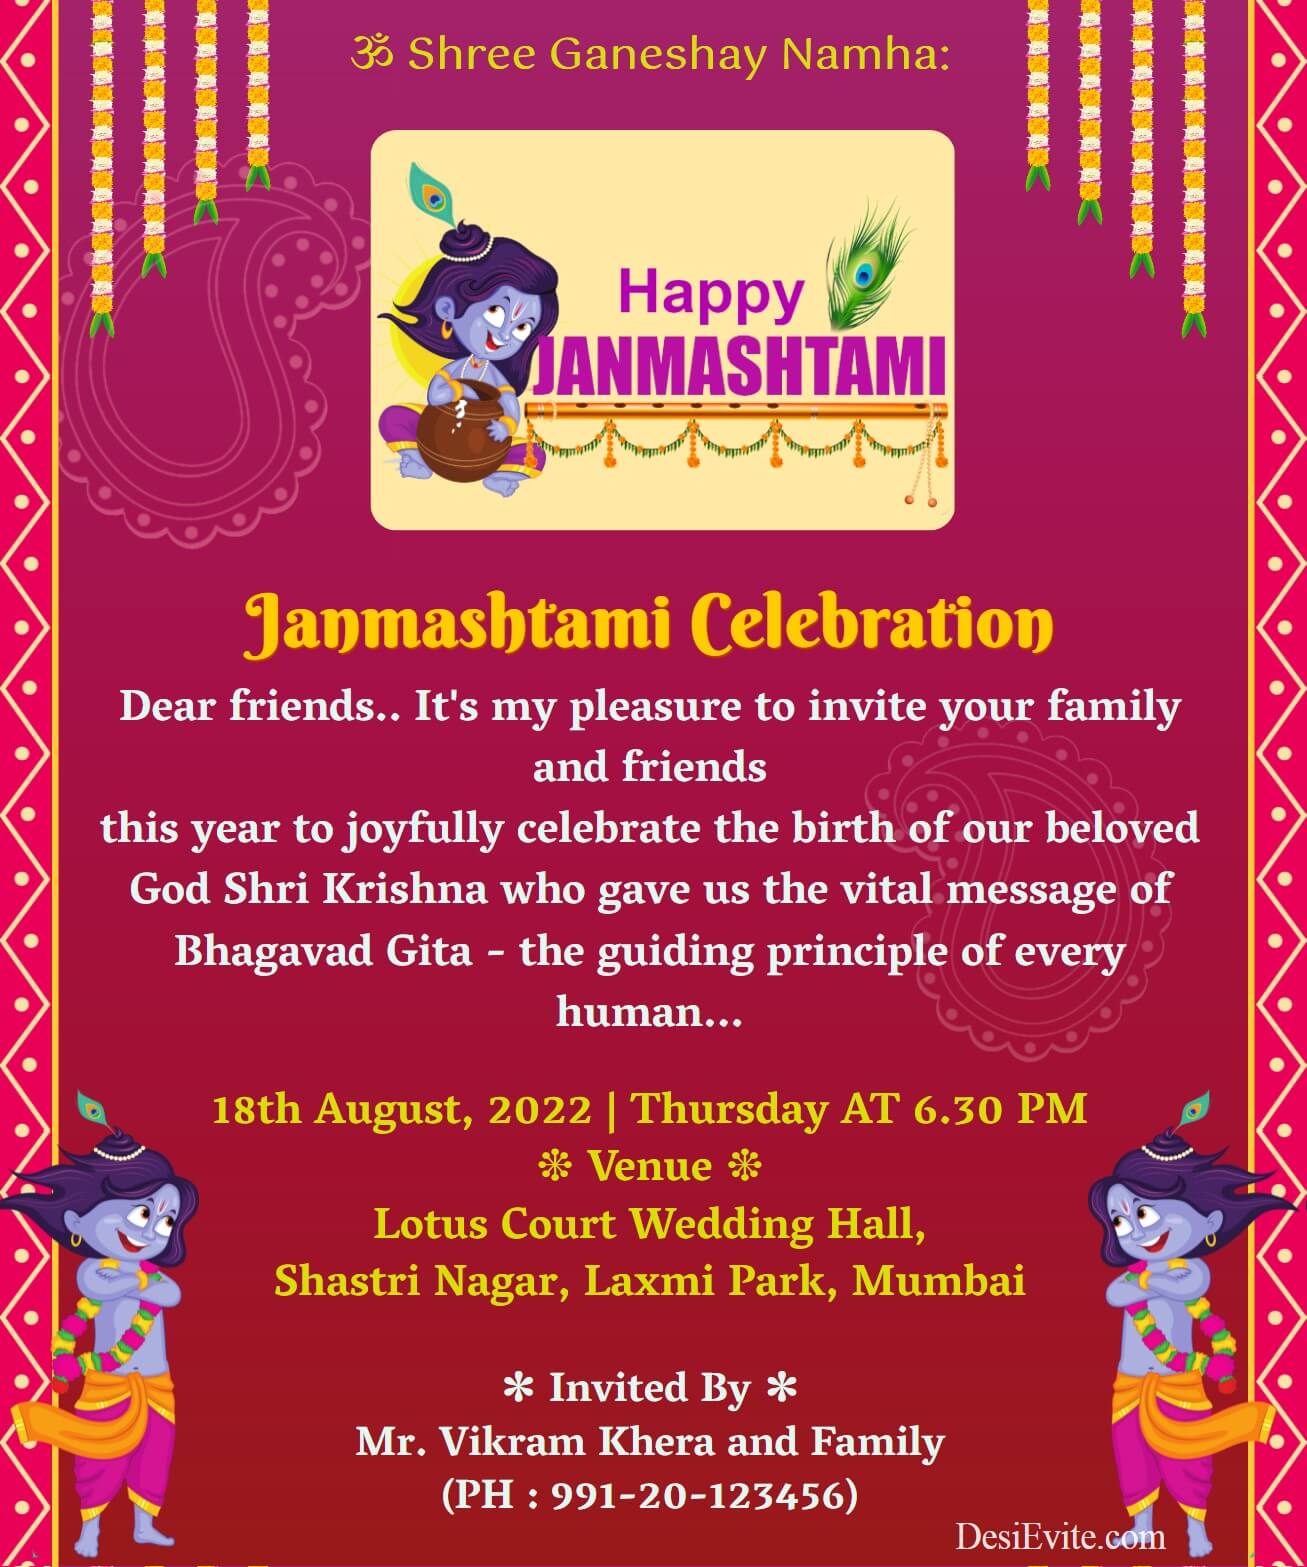 Krishna Janmashtami Invitation ecard border red background 126 